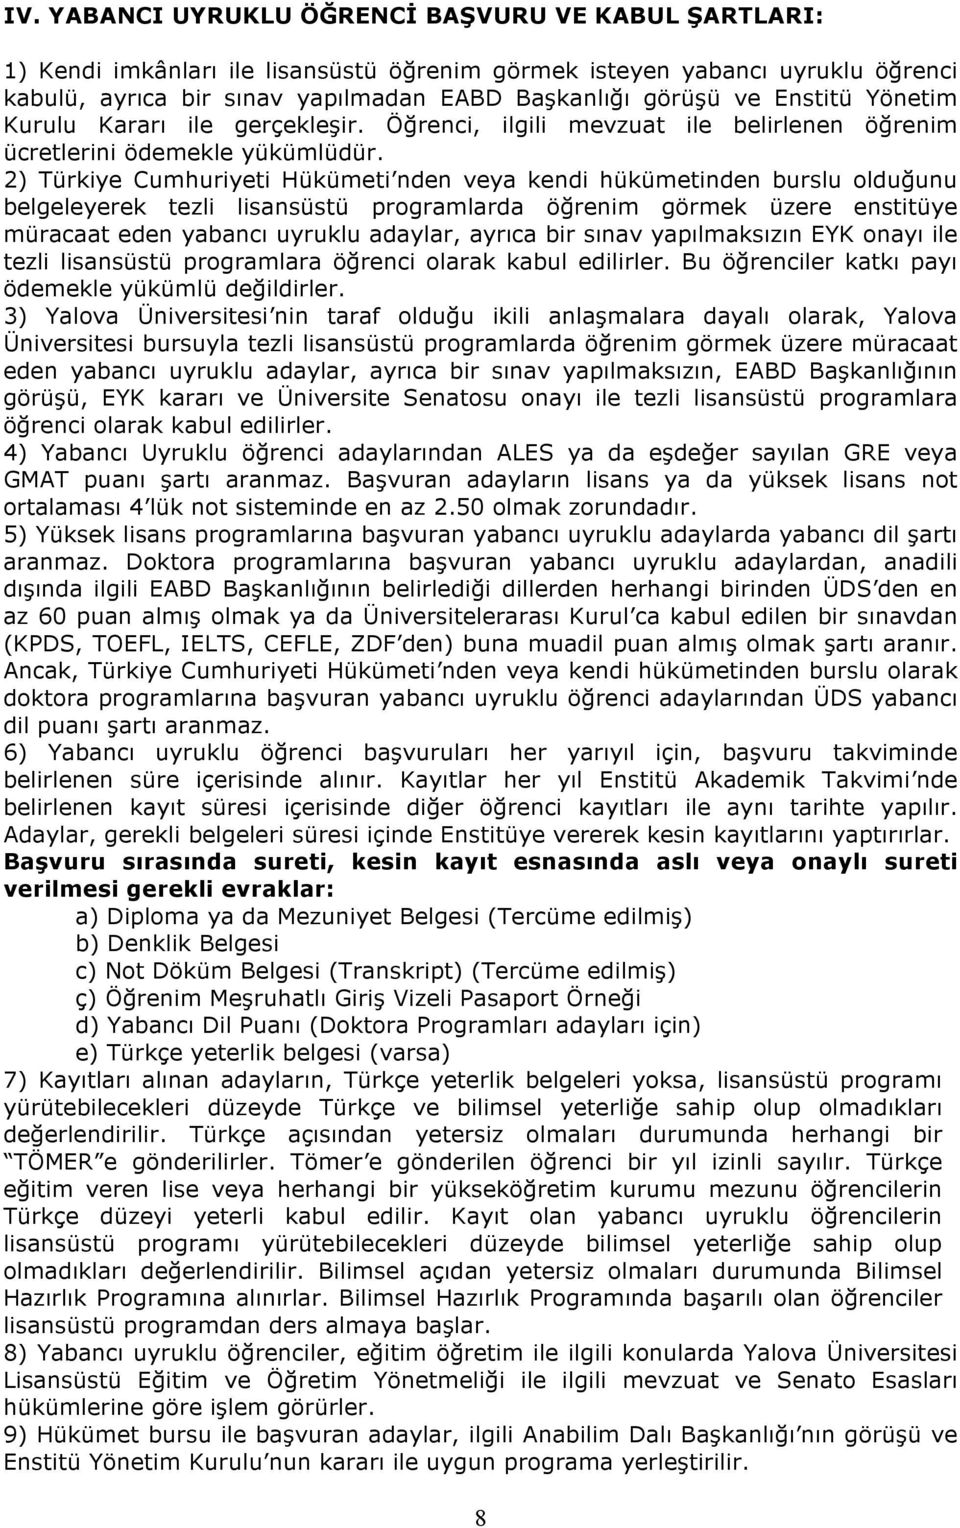 2) Türkiye Cumhuriyeti Hükümeti nden veya kendi hükümetinden burslu olduğunu belgeleyerek tezli lisansüstü programlarda öğrenim görmek üzere enstitüye müracaat eden yabancı uyruklu adaylar, ayrıca